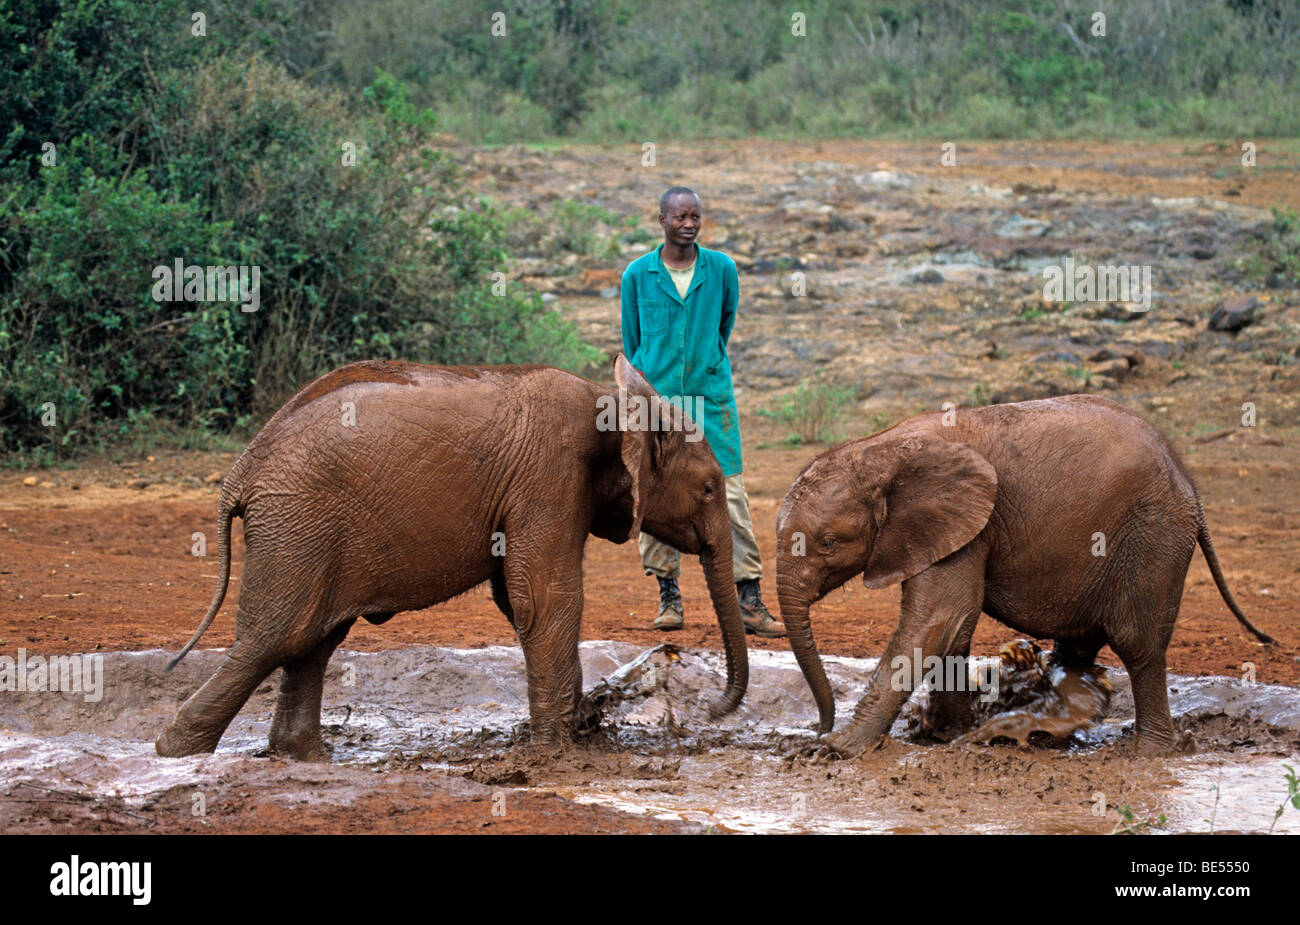 Giovane elefante africano (Loxodonta africana) e custodi, Sheldrick's l'Orfanotrofio degli Elefanti, un orfanotrofio per elefanti, Nairobi Parco giochi Foto Stock